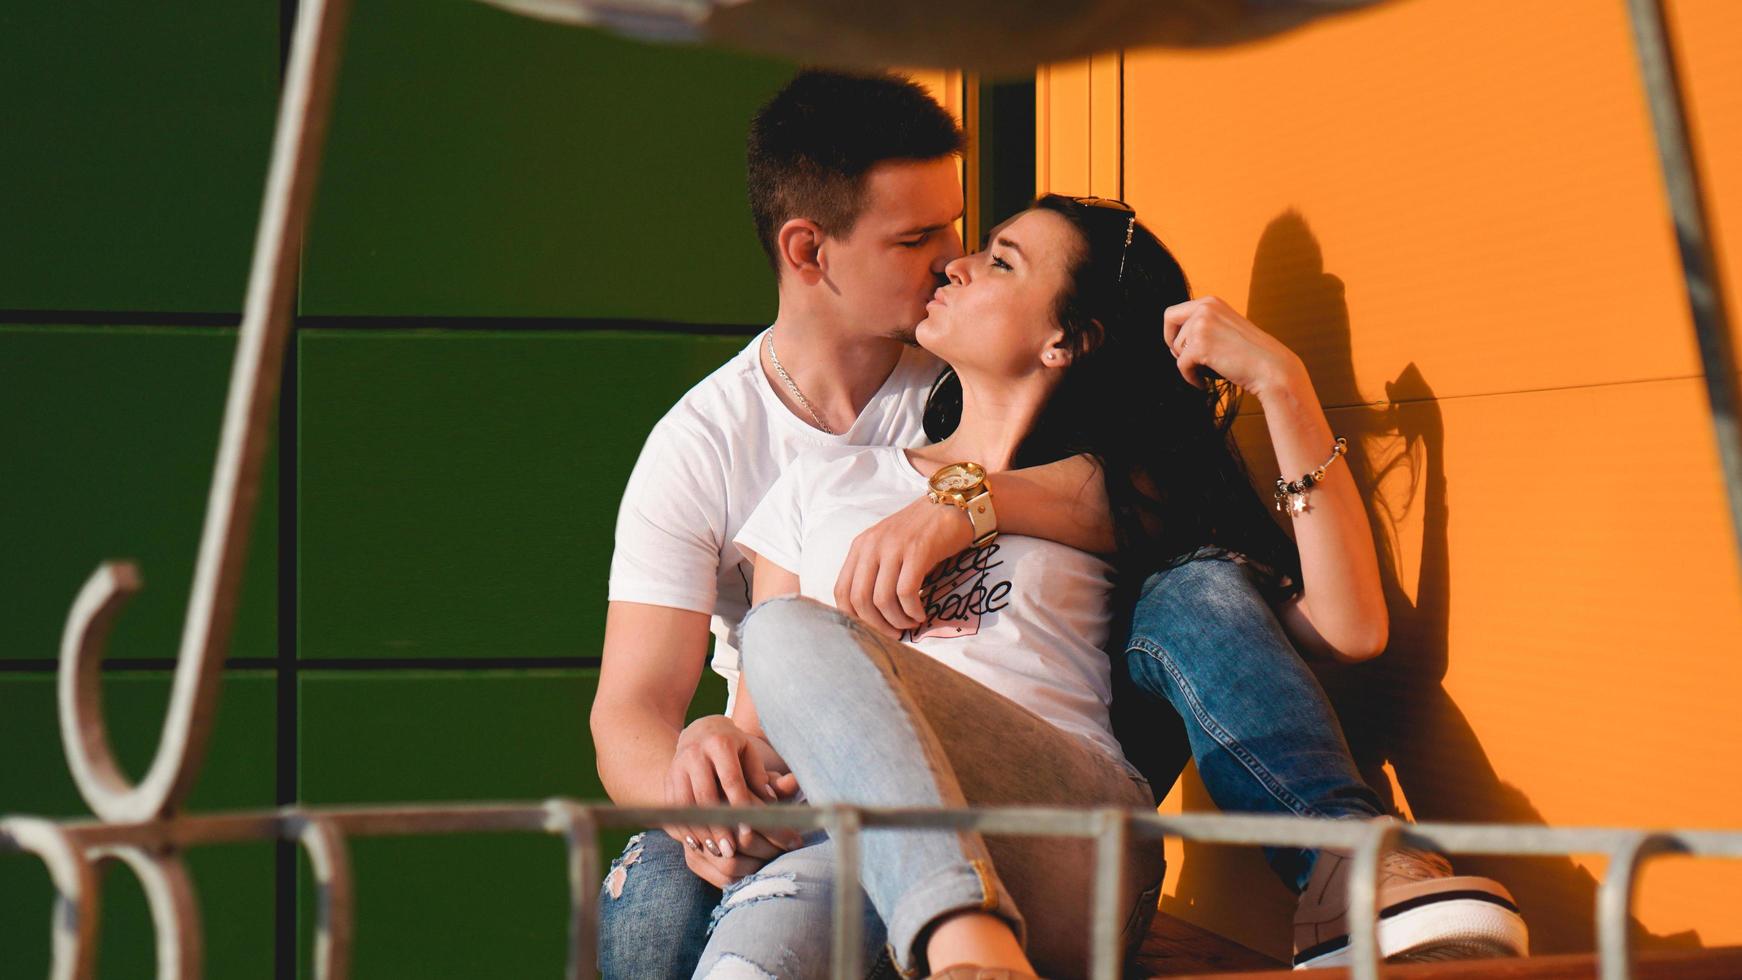 coppia che si bacia contro il muro giallo e verde isolato in città foto